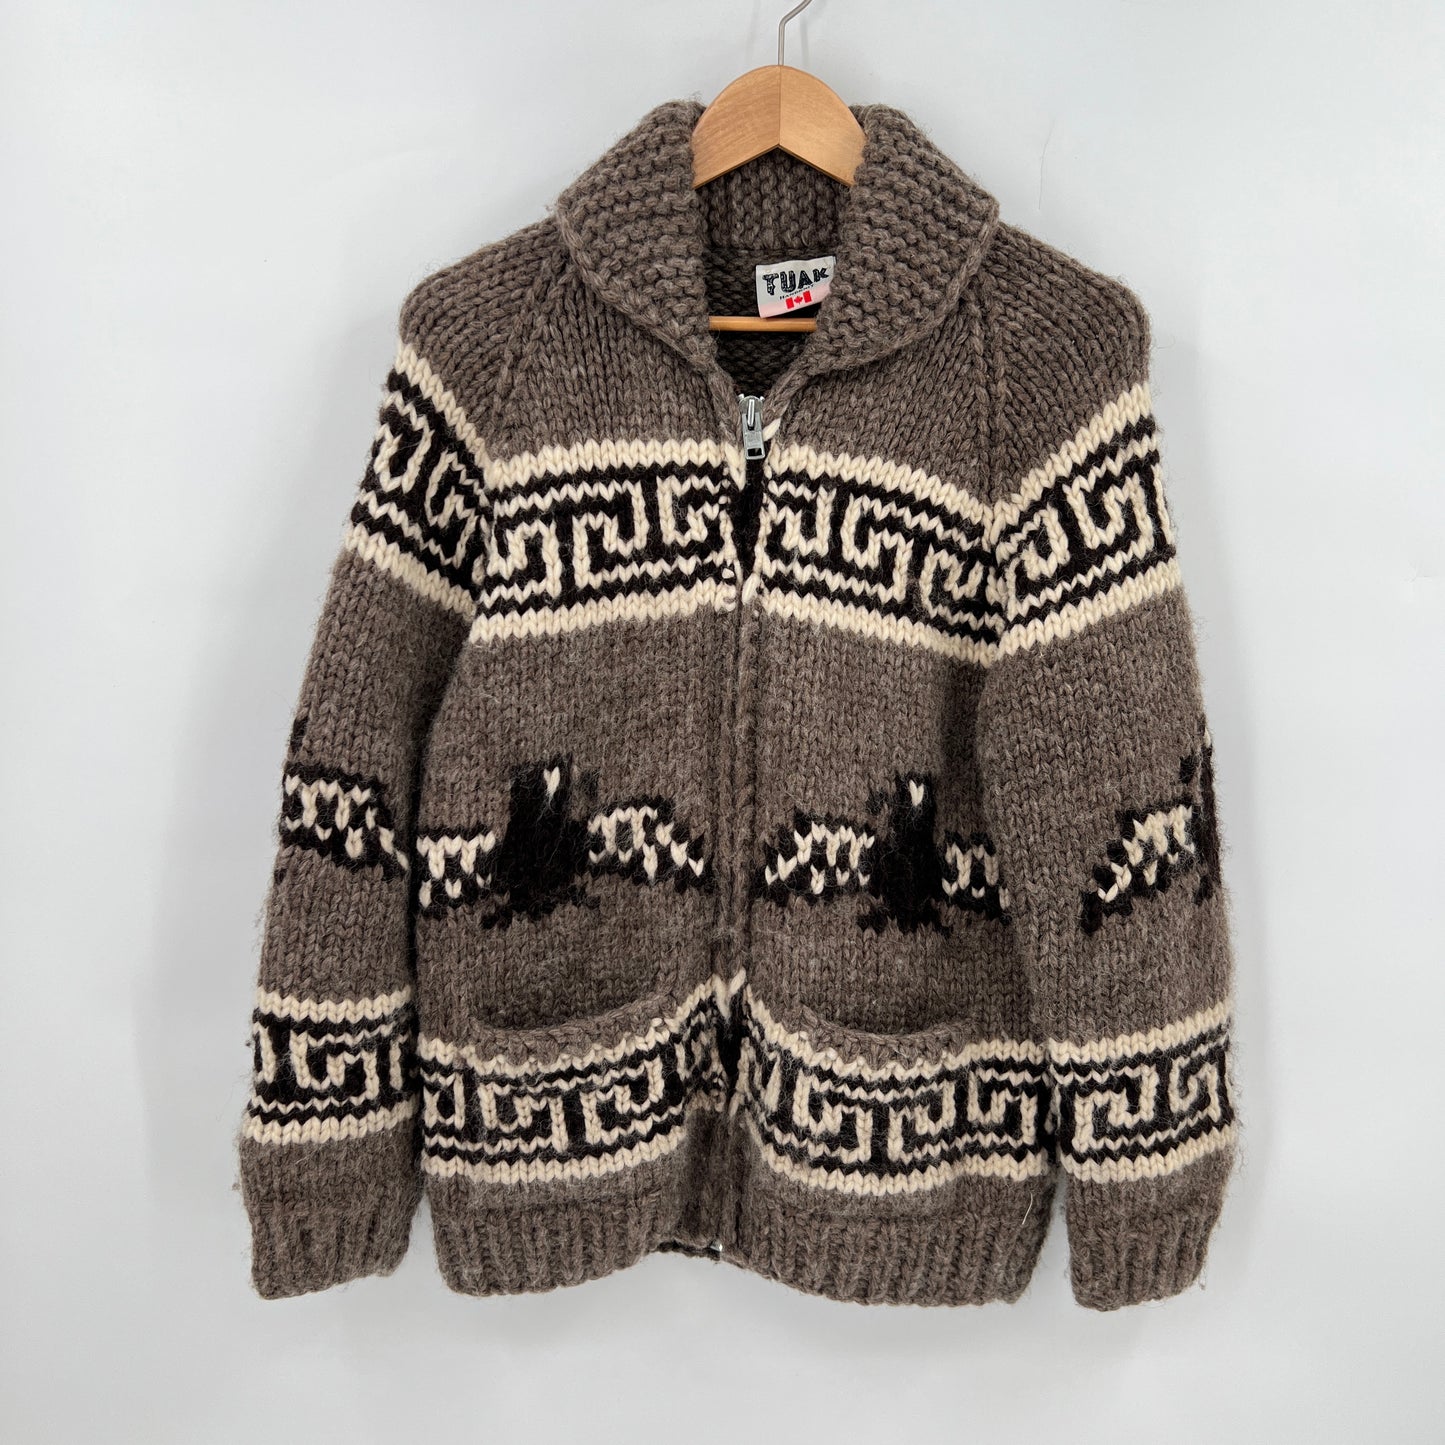 SOLD. Vintage Tuak Handknit Cowichan Wool Sweater